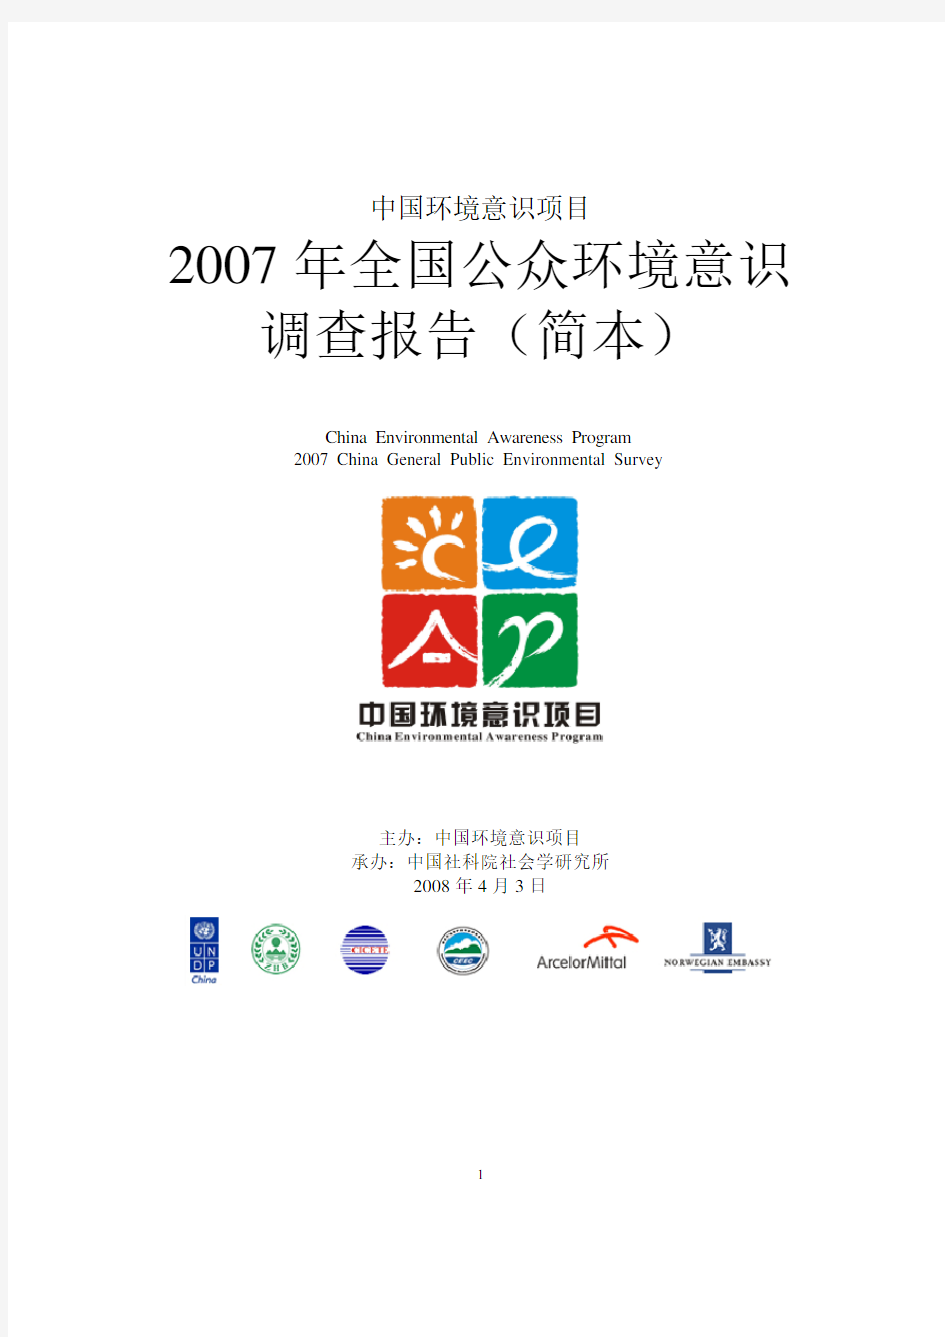 中国环境意识项目2007年全国公众环境意识调查报告(中文简本)